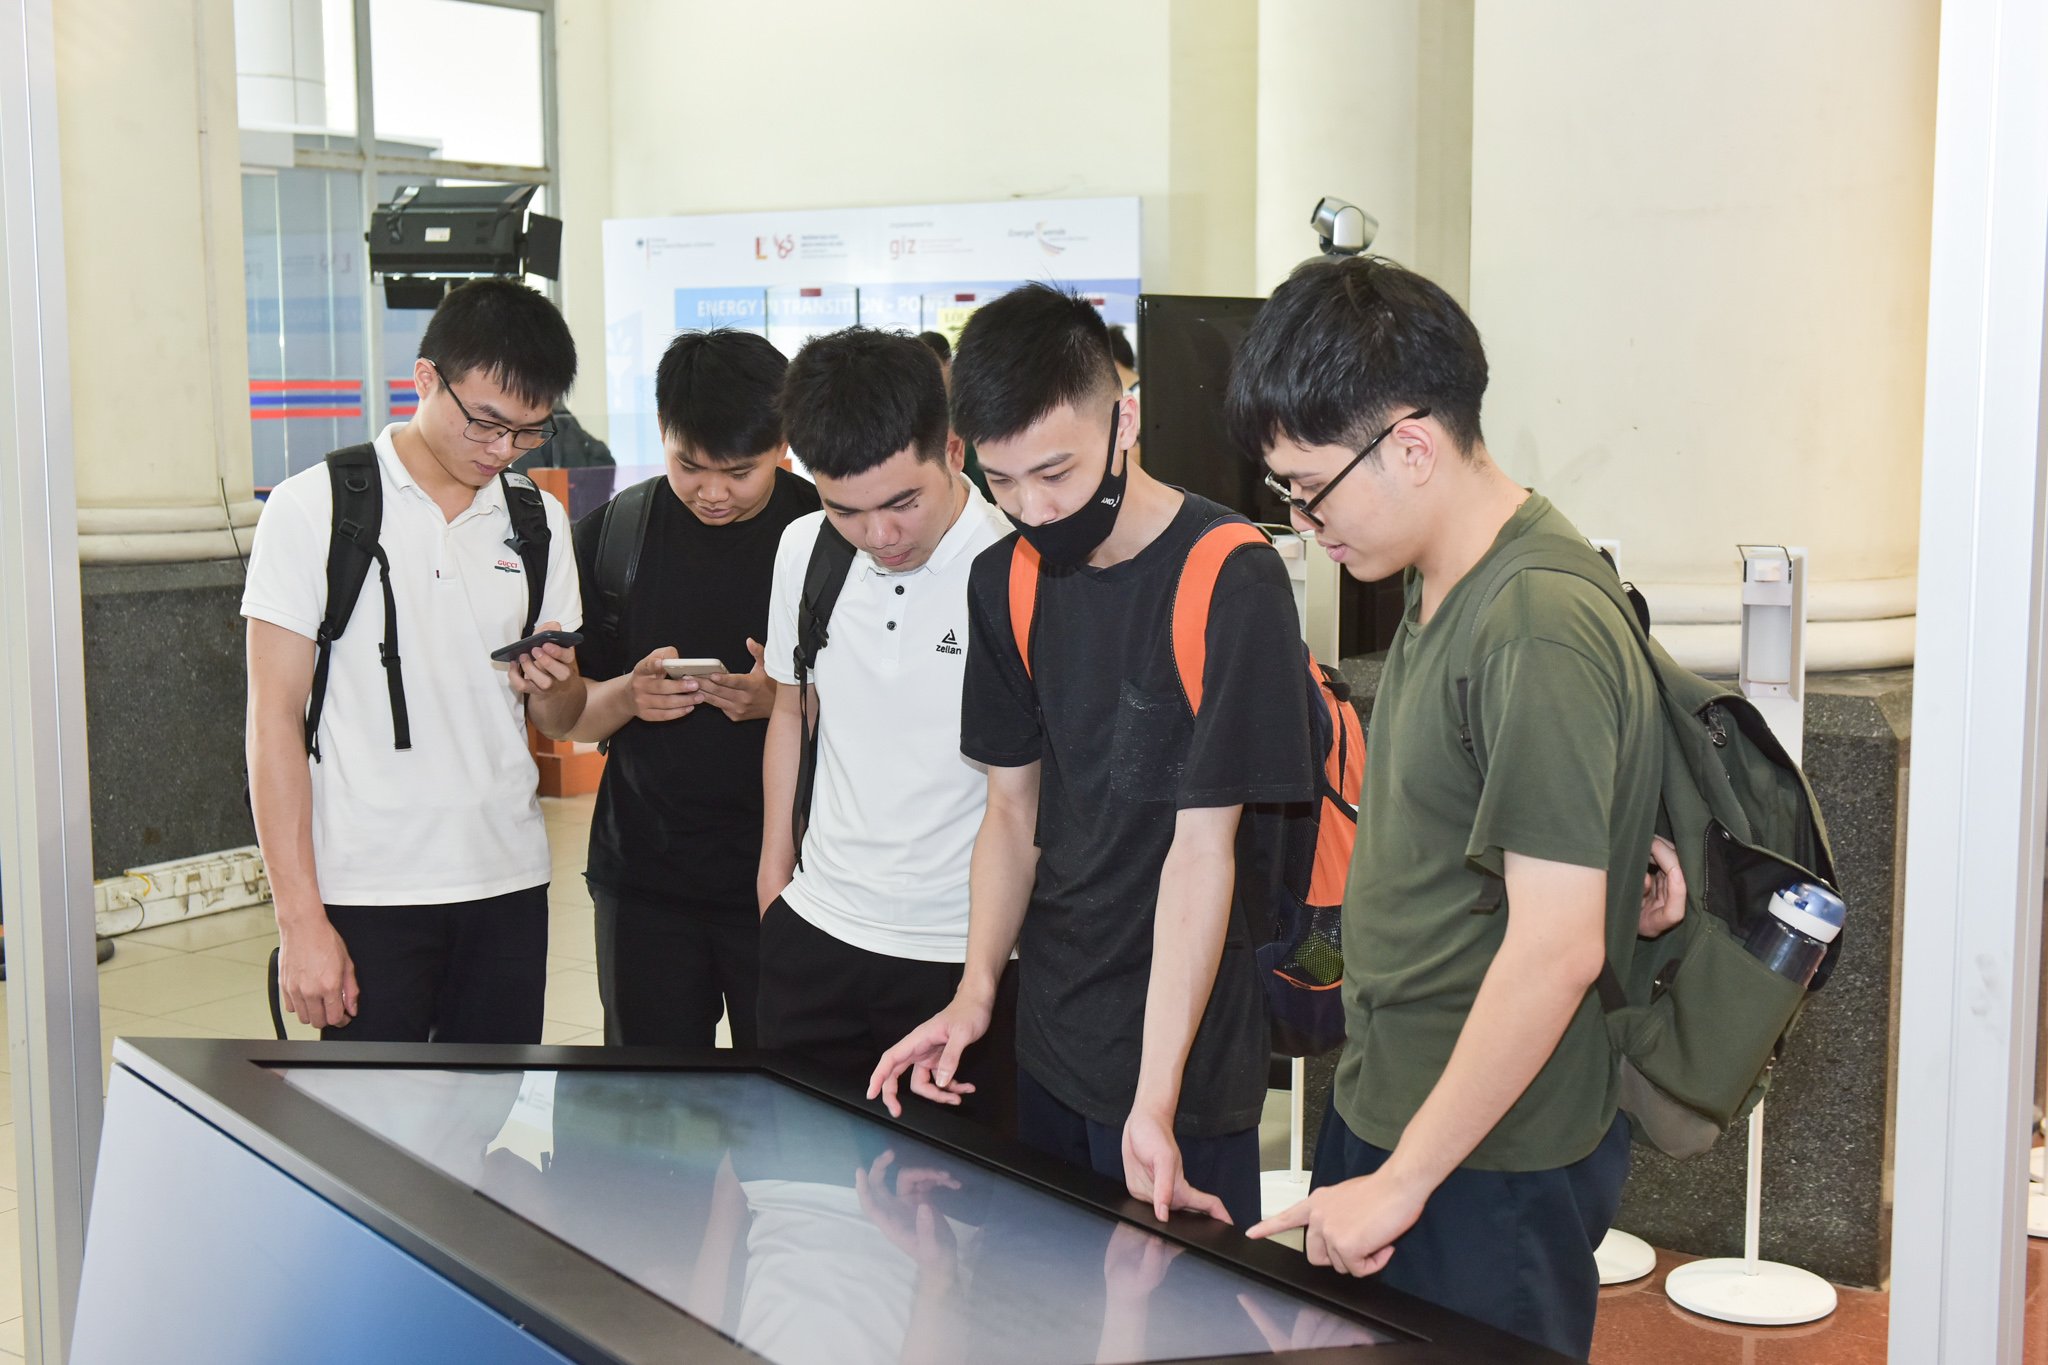 An der Hanoi Universität of Science and Technology informieren sich fünf Schüler an der Station "Mobilität" über neue Mobilitätskonzepte. Sie stehen über einen hüfthohen Touchscreen gebeugt. April 2021.